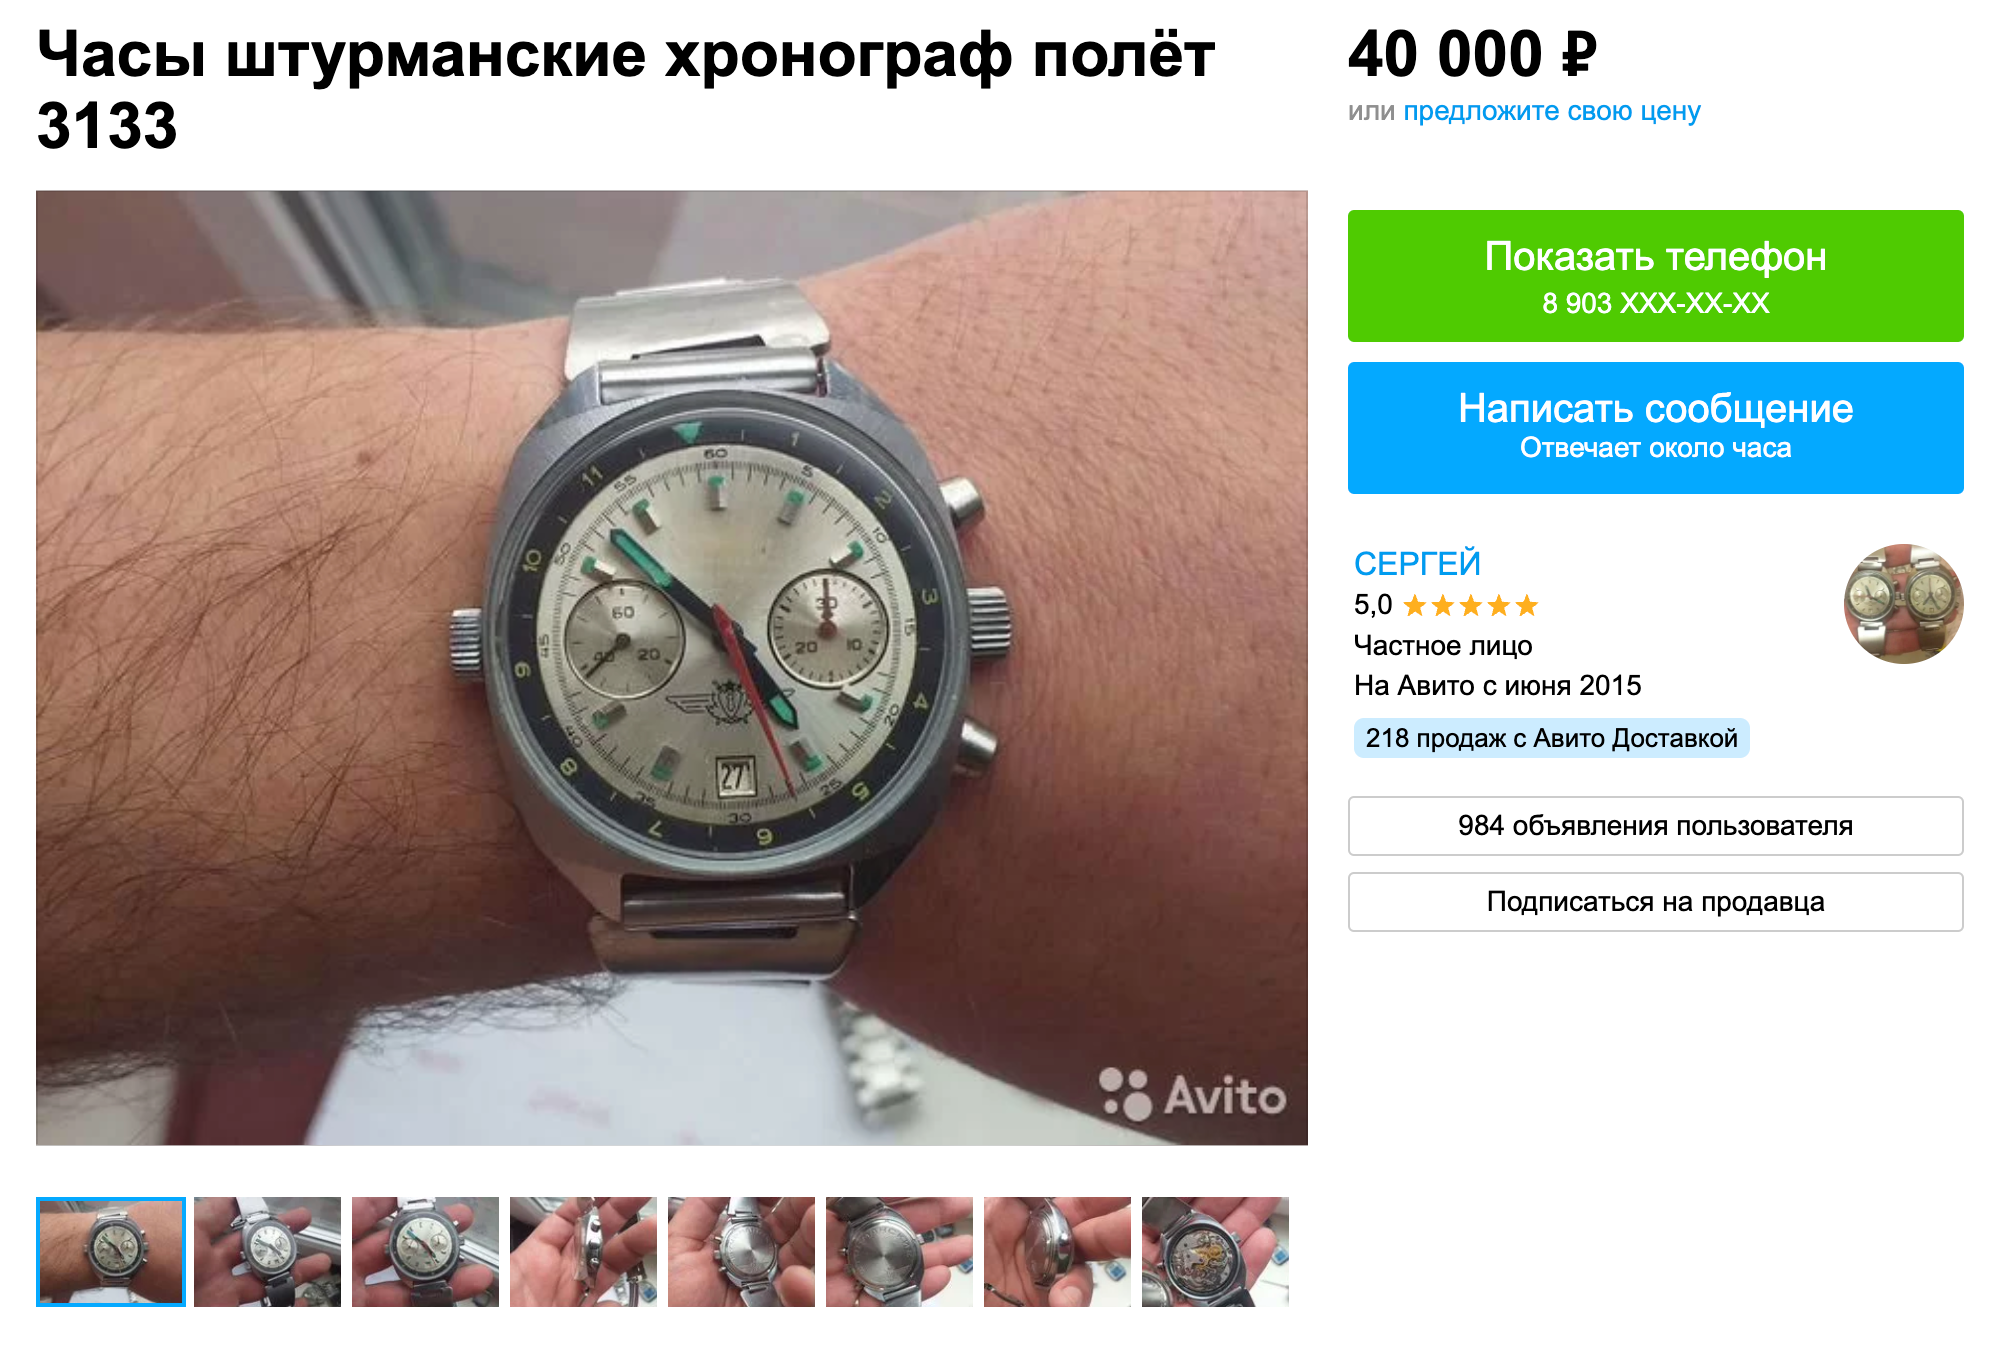 На «Авито» продают штурманские часы за 40 000 ₽. К часам на этом фото у меня есть вопросы. Возможно, их собрали из частей от других экземпляров. Покупать такие в коллекцию точно не стоит. Источник: avito.ru